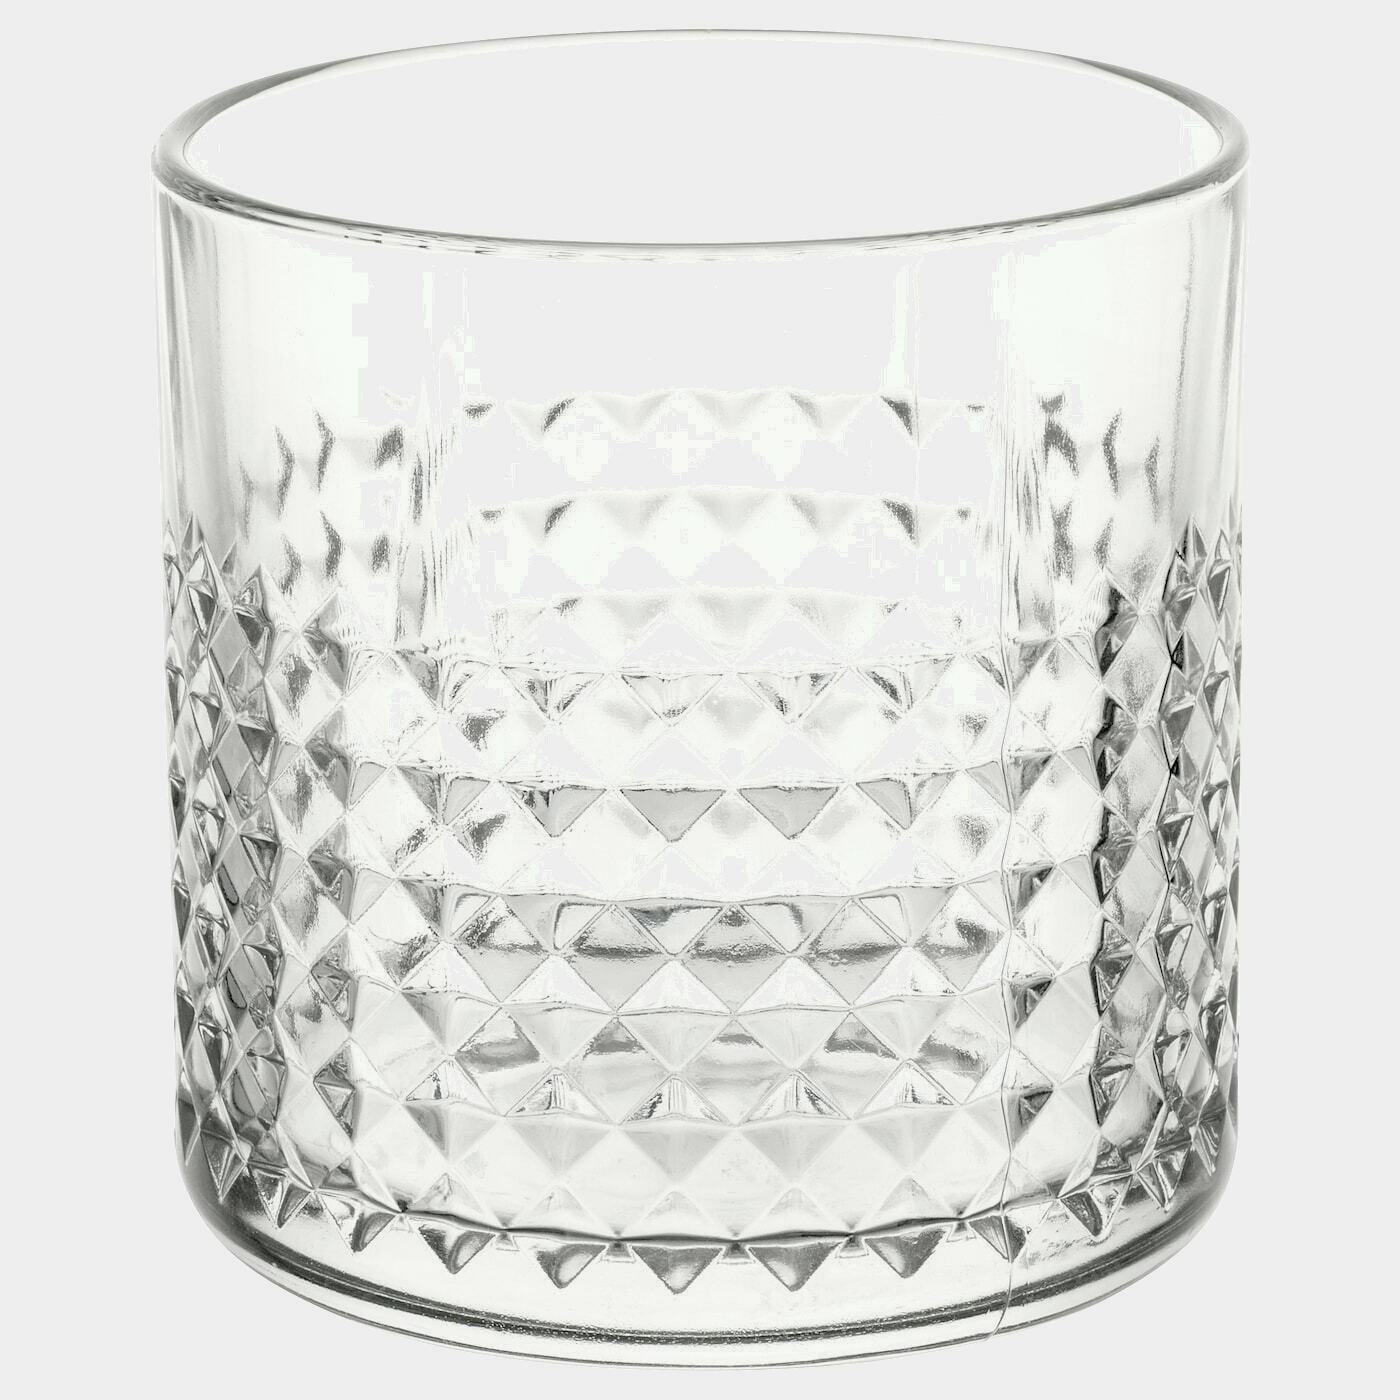 FRASERA Whiskyglas  - Gläser - Geschirr & Küchenaccessoires Ideen für dein Zuhause von Home Trends. Geschirr & Küchenaccessoires Trends von Social Media Influencer für dein Skandi Zuhause.